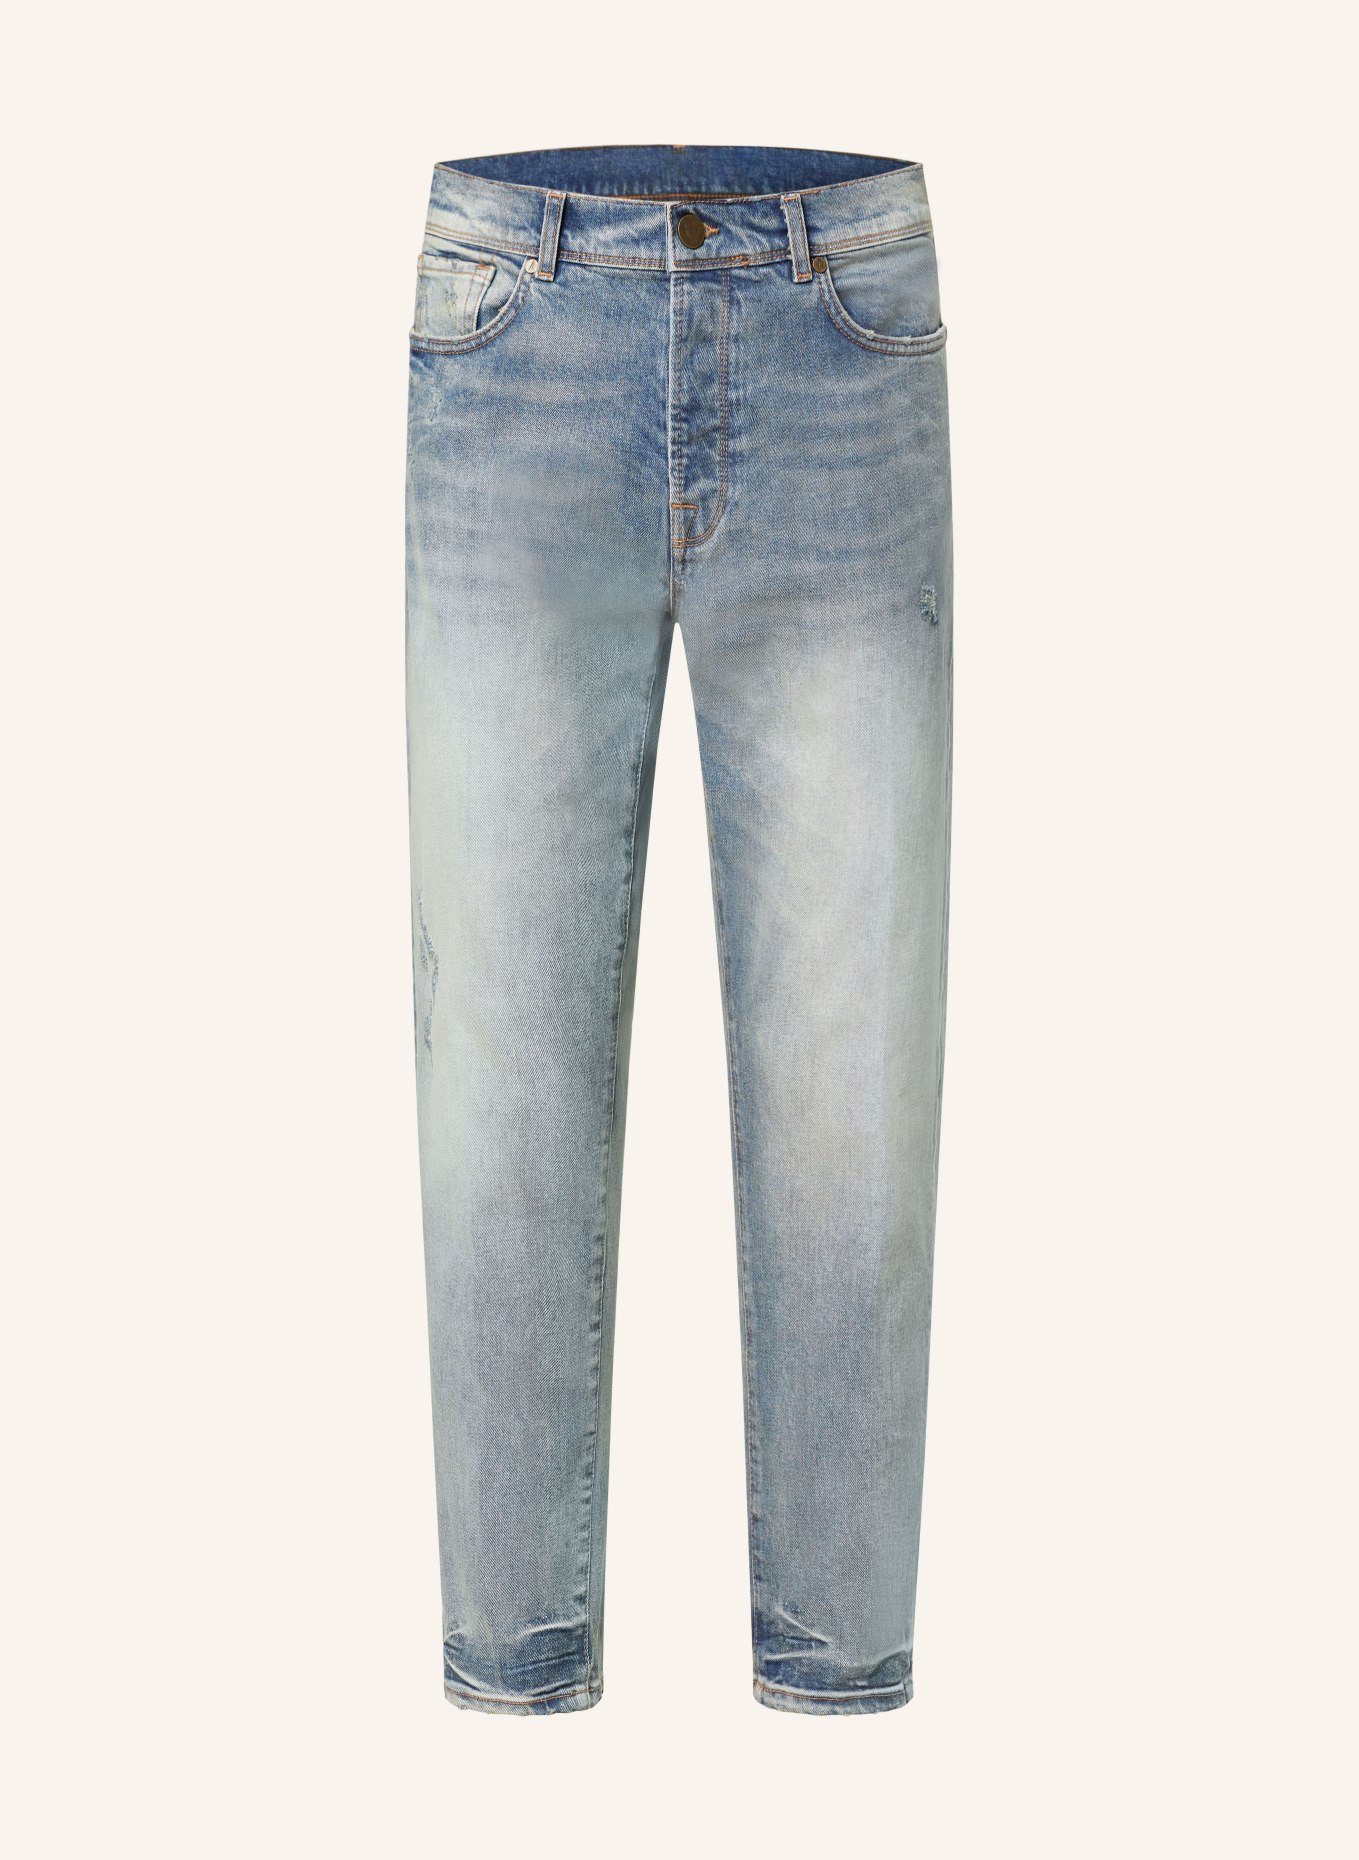 GOLDGARN DENIM Jeans RHEINAU relaxed cropped fit, Color: 1010 Vintageblue (Image 1)